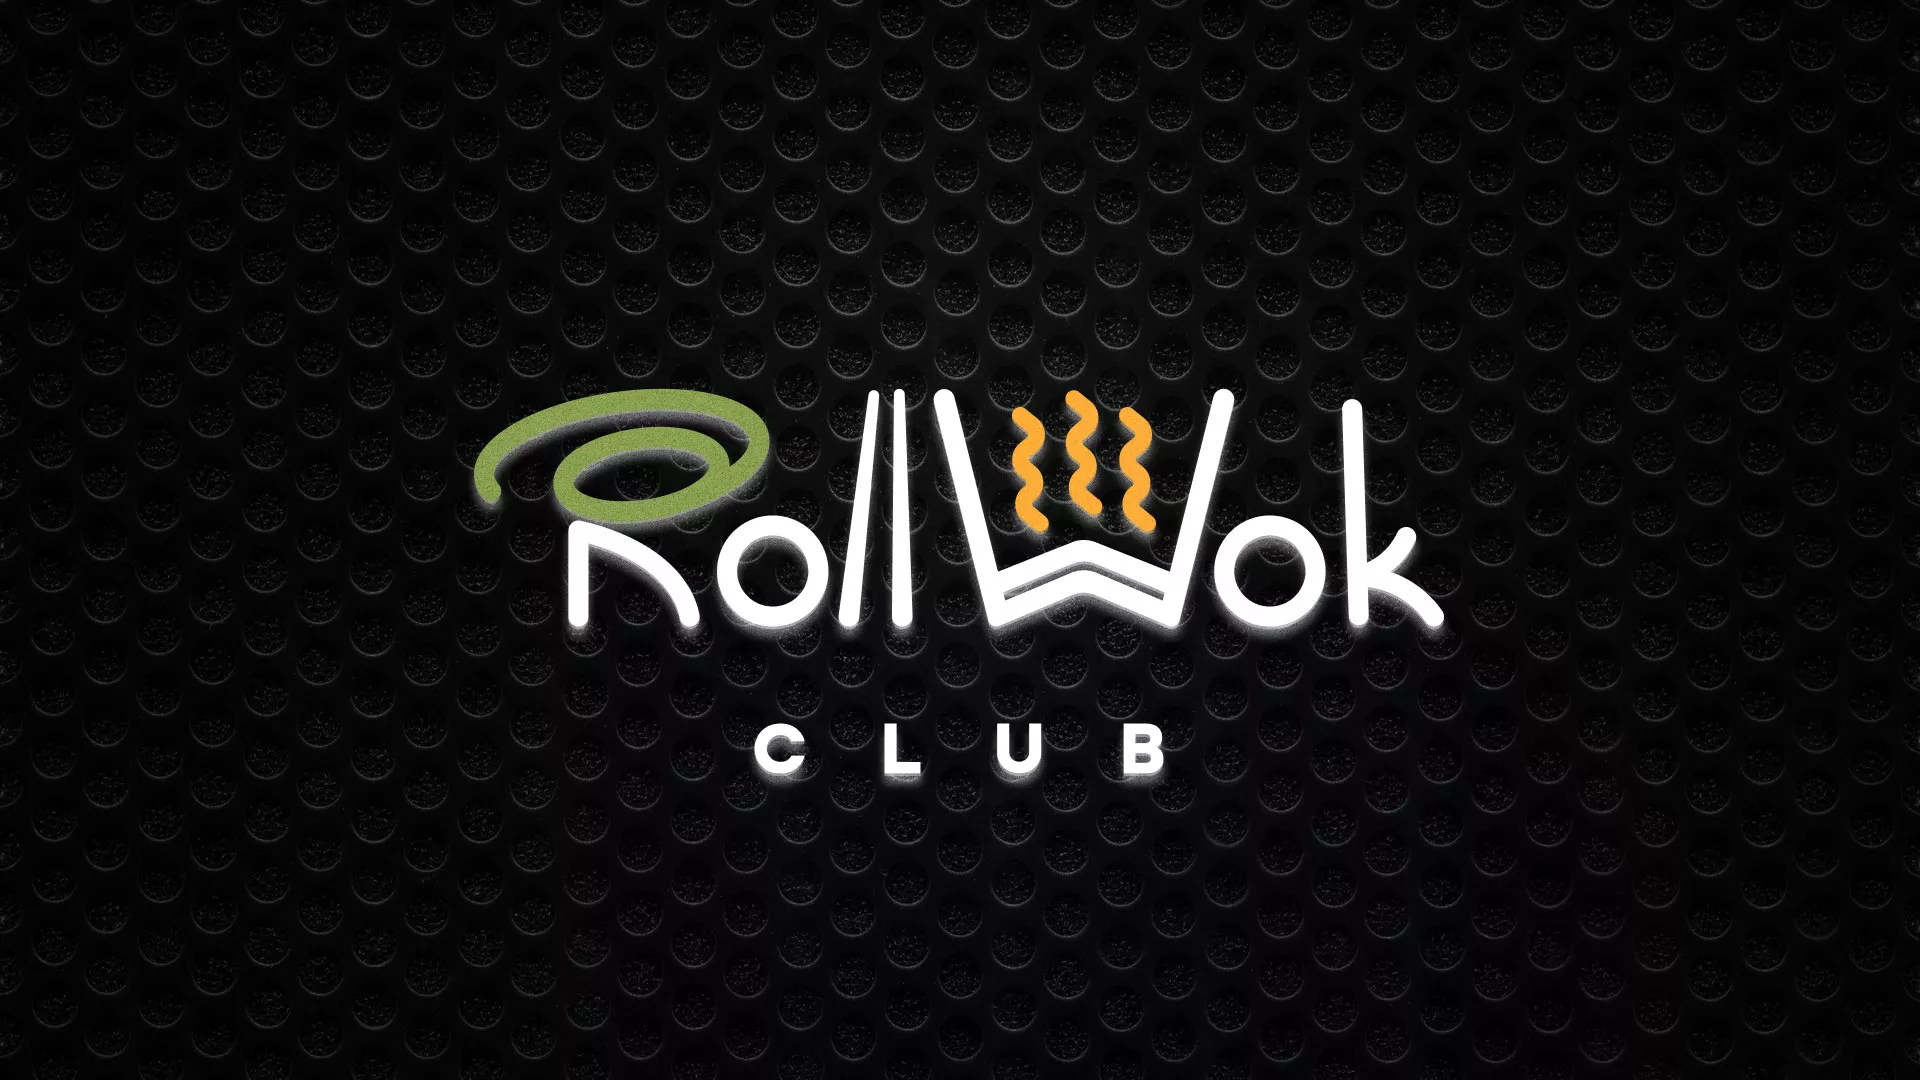 Брендирование торговых точек суши-бара «Roll Wok Club» в Иркутске